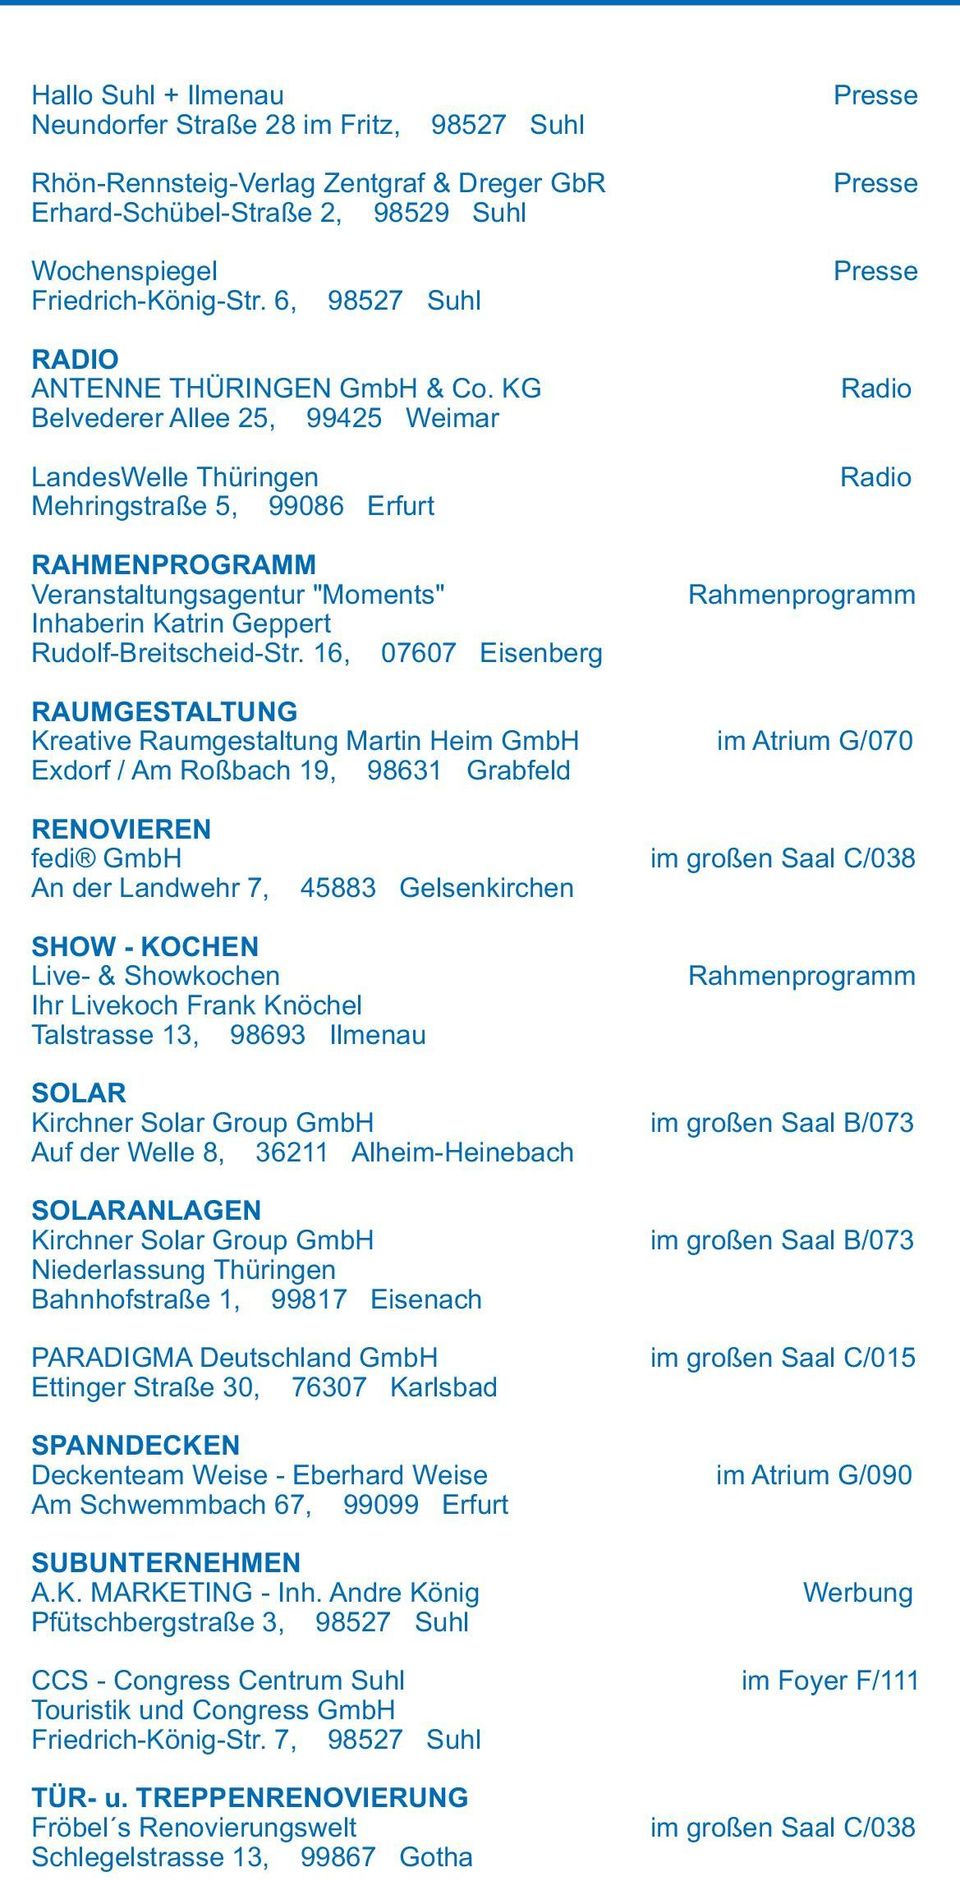 KG Radio Belvederer Allee 25, 99425 Weimar LandesWelle Thüringen Radio Mehringstraße 5, 99086 Erfurt RAHMENPROGRAMM Veranstaltungsagentur "Moments" Rahmenprogramm Inhaberin Katrin Geppert